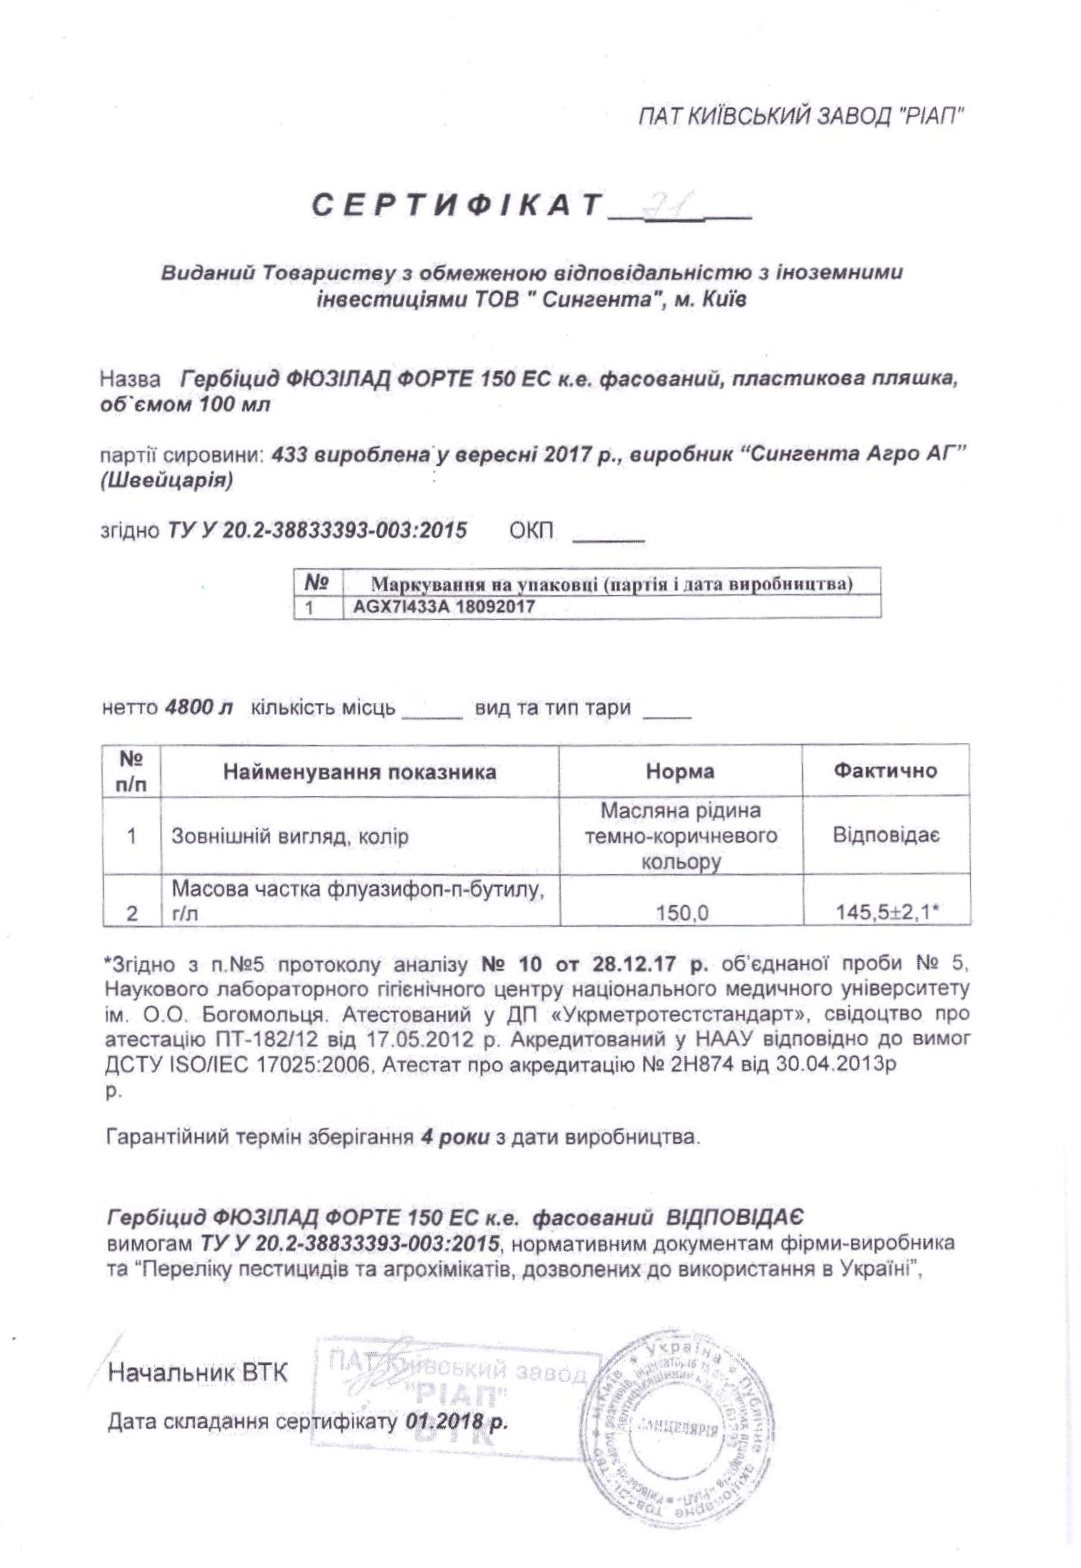 Сертифікат гербіцид Фюзілад Форте Syngenta